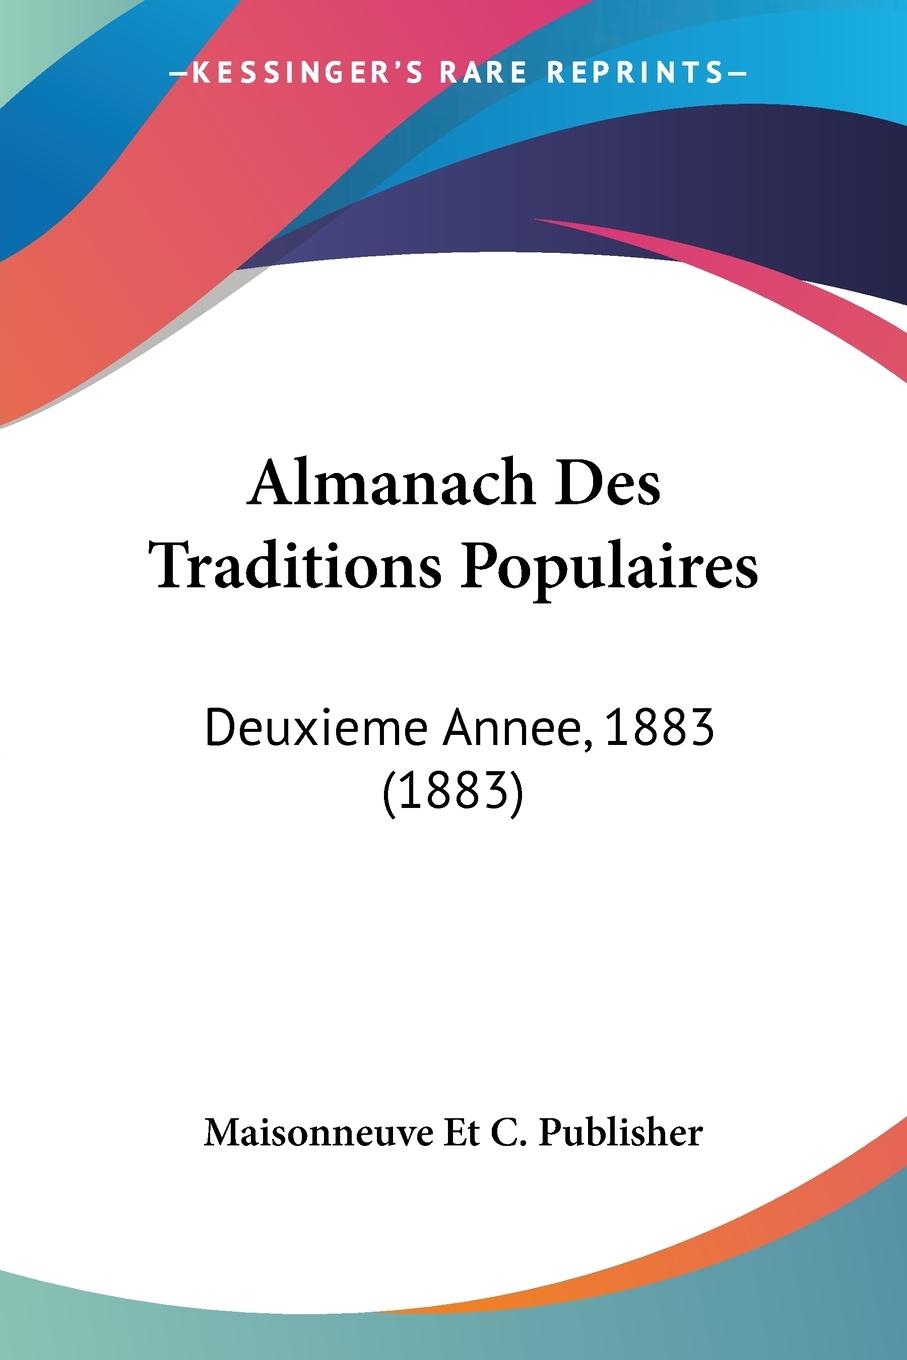 Almanach Des Traditions Populaires - Maisonneuve Et C. Publisher